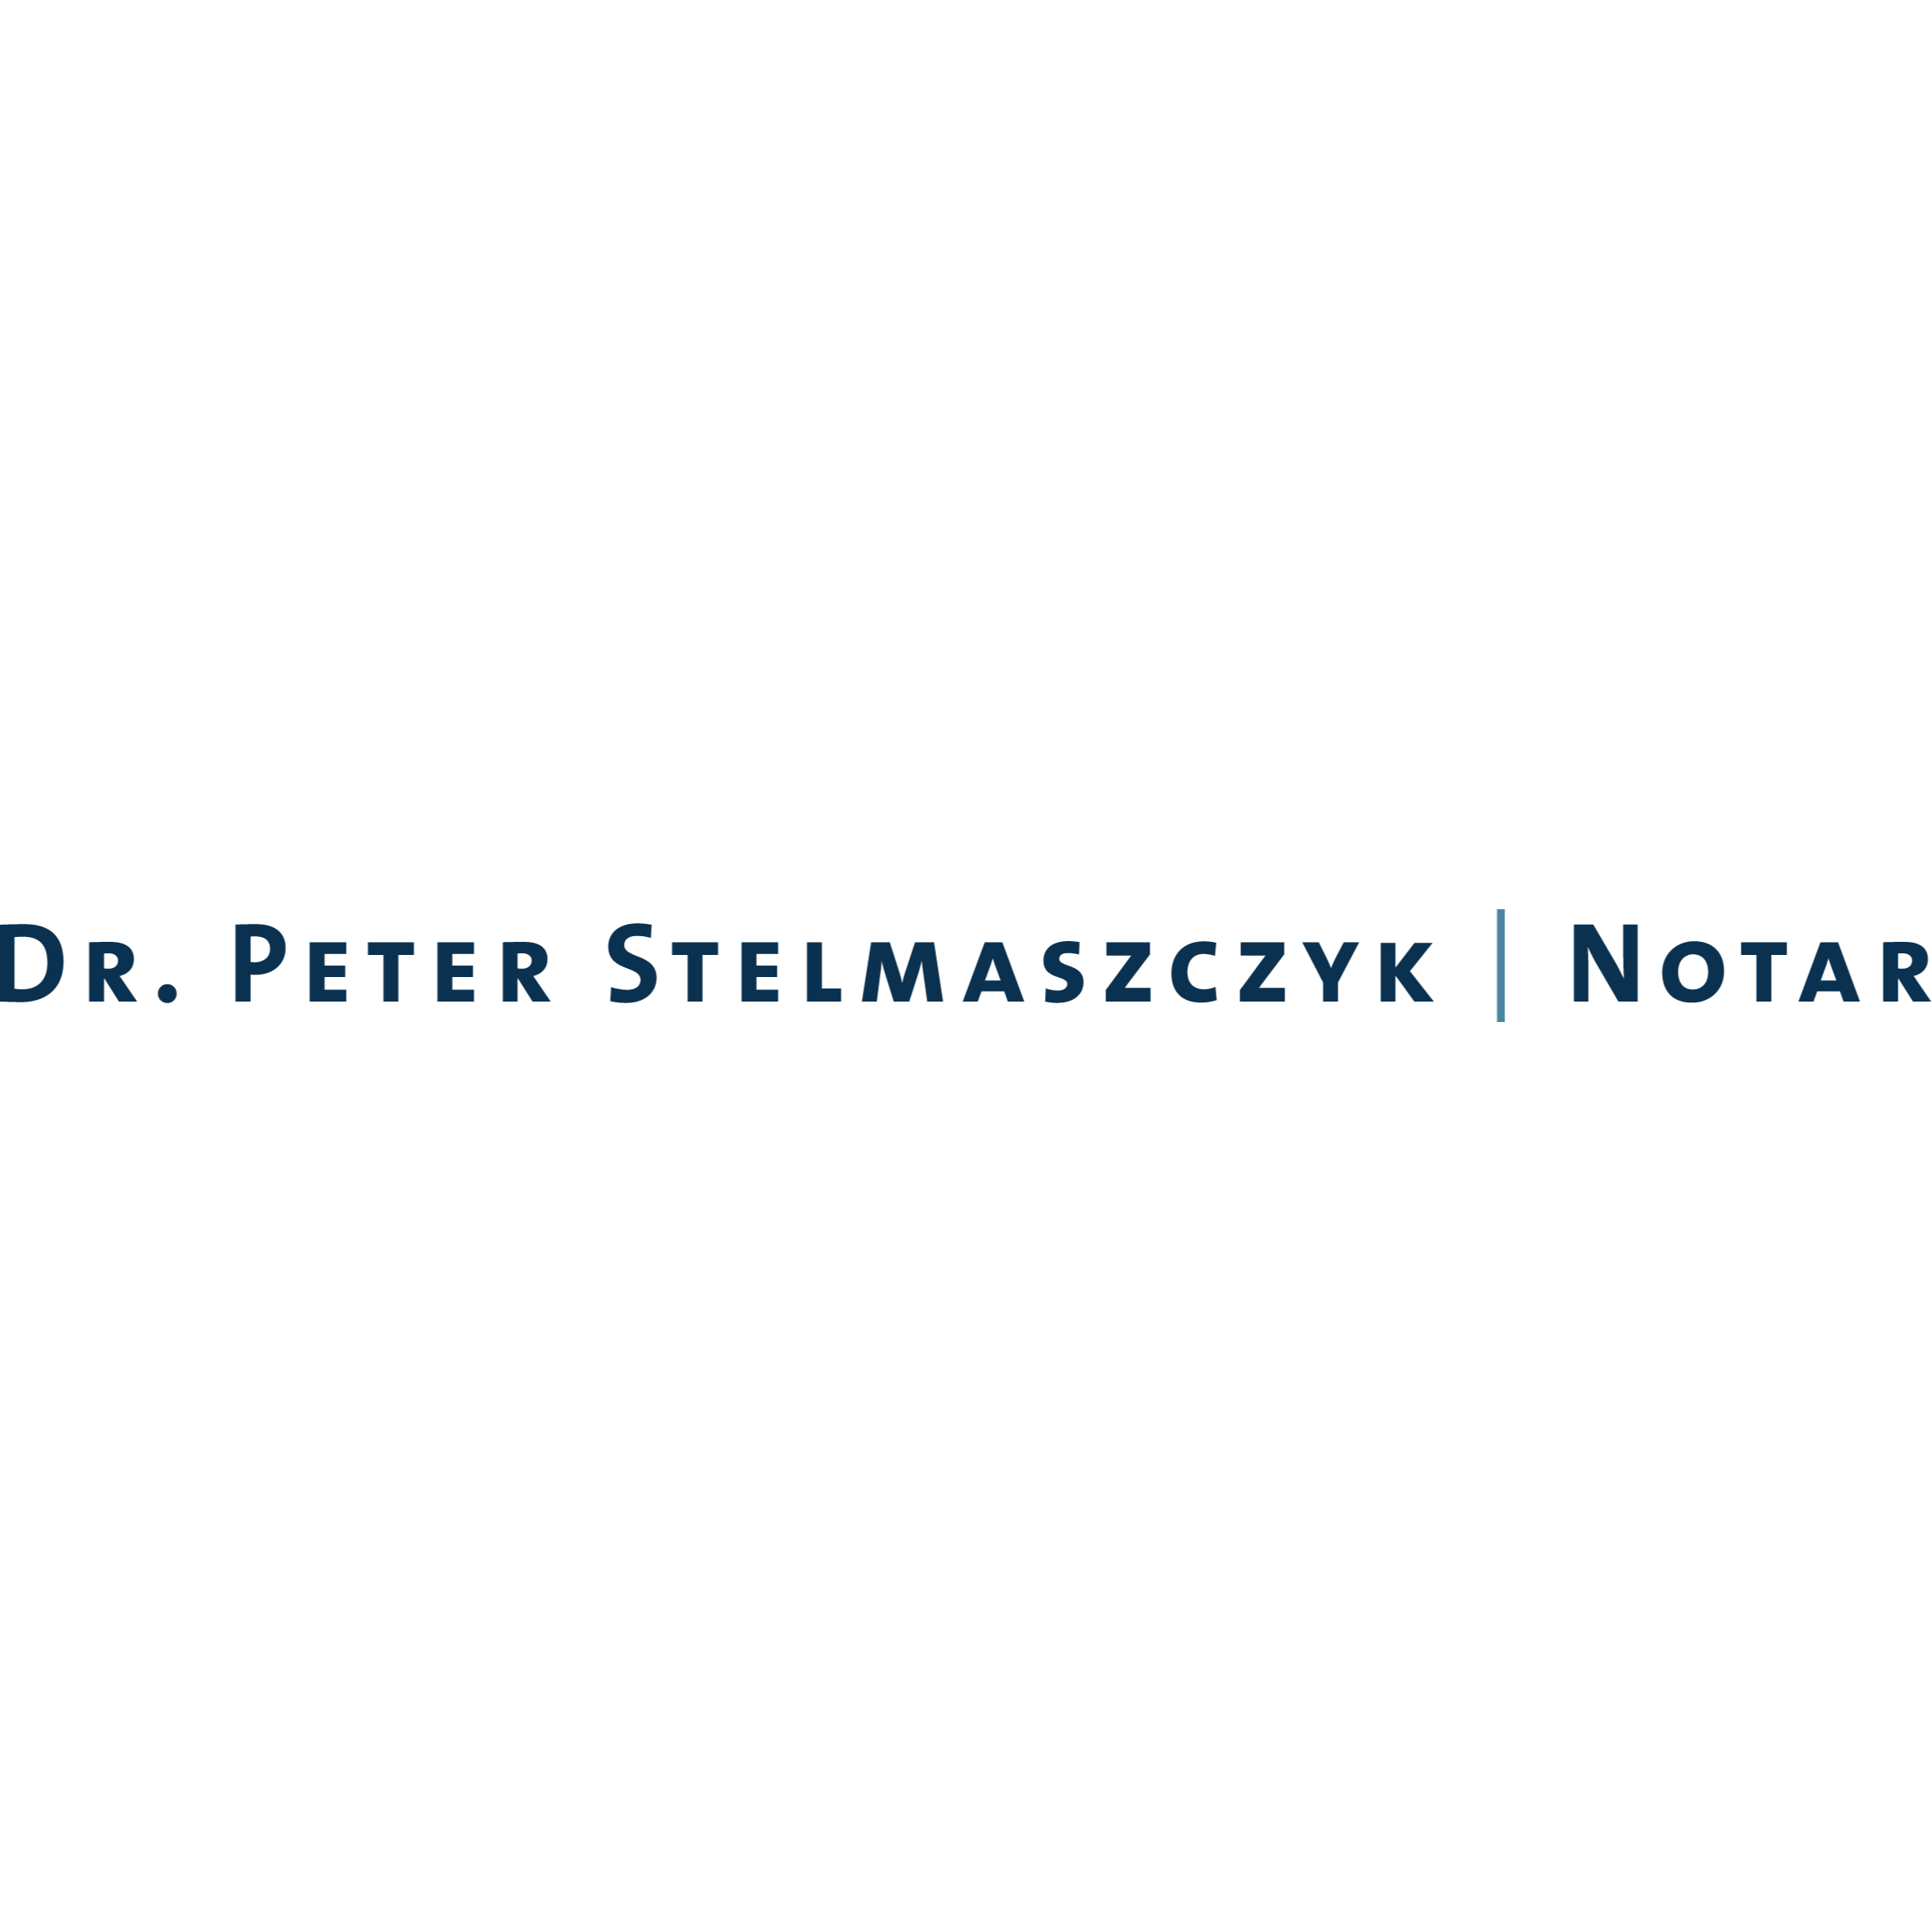 Notar Dr. Peter Stelmaszczyk in Burscheid im Rheinland - Logo